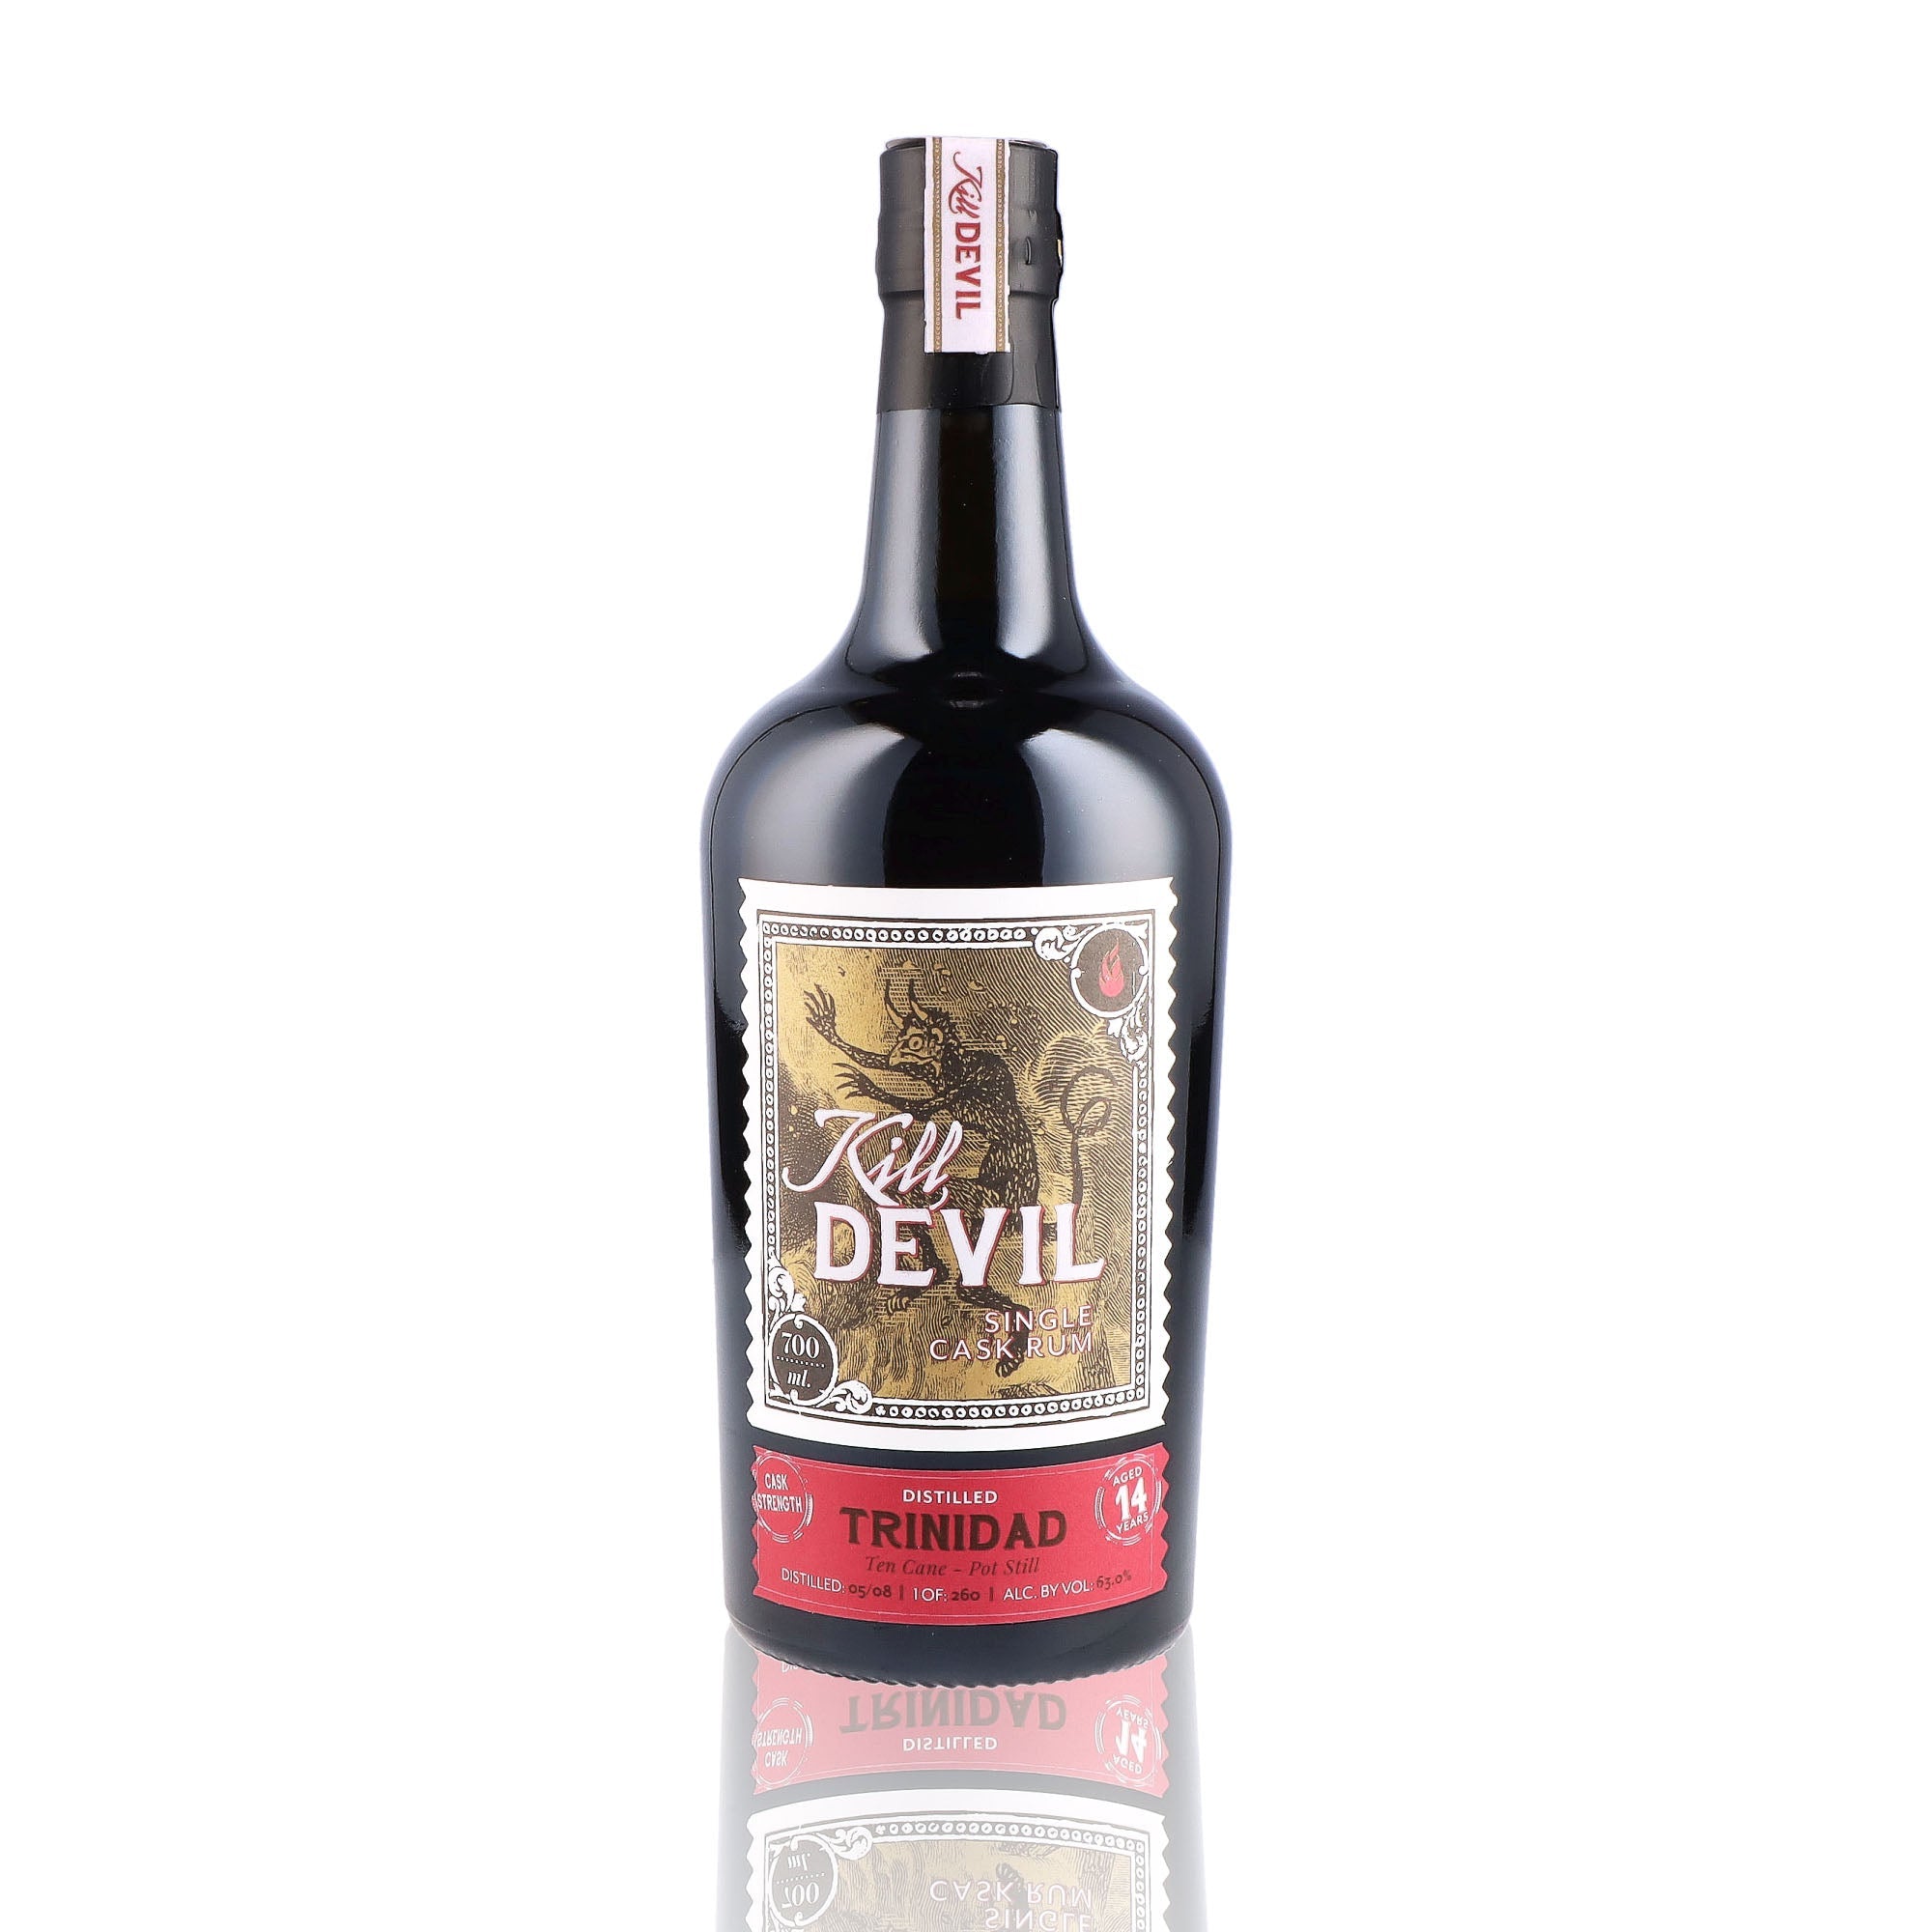 Une bouteille de rhum vieux, de la marque Kill Devil, nommée Trinidad 14 ans Ten Cane Single Cask.